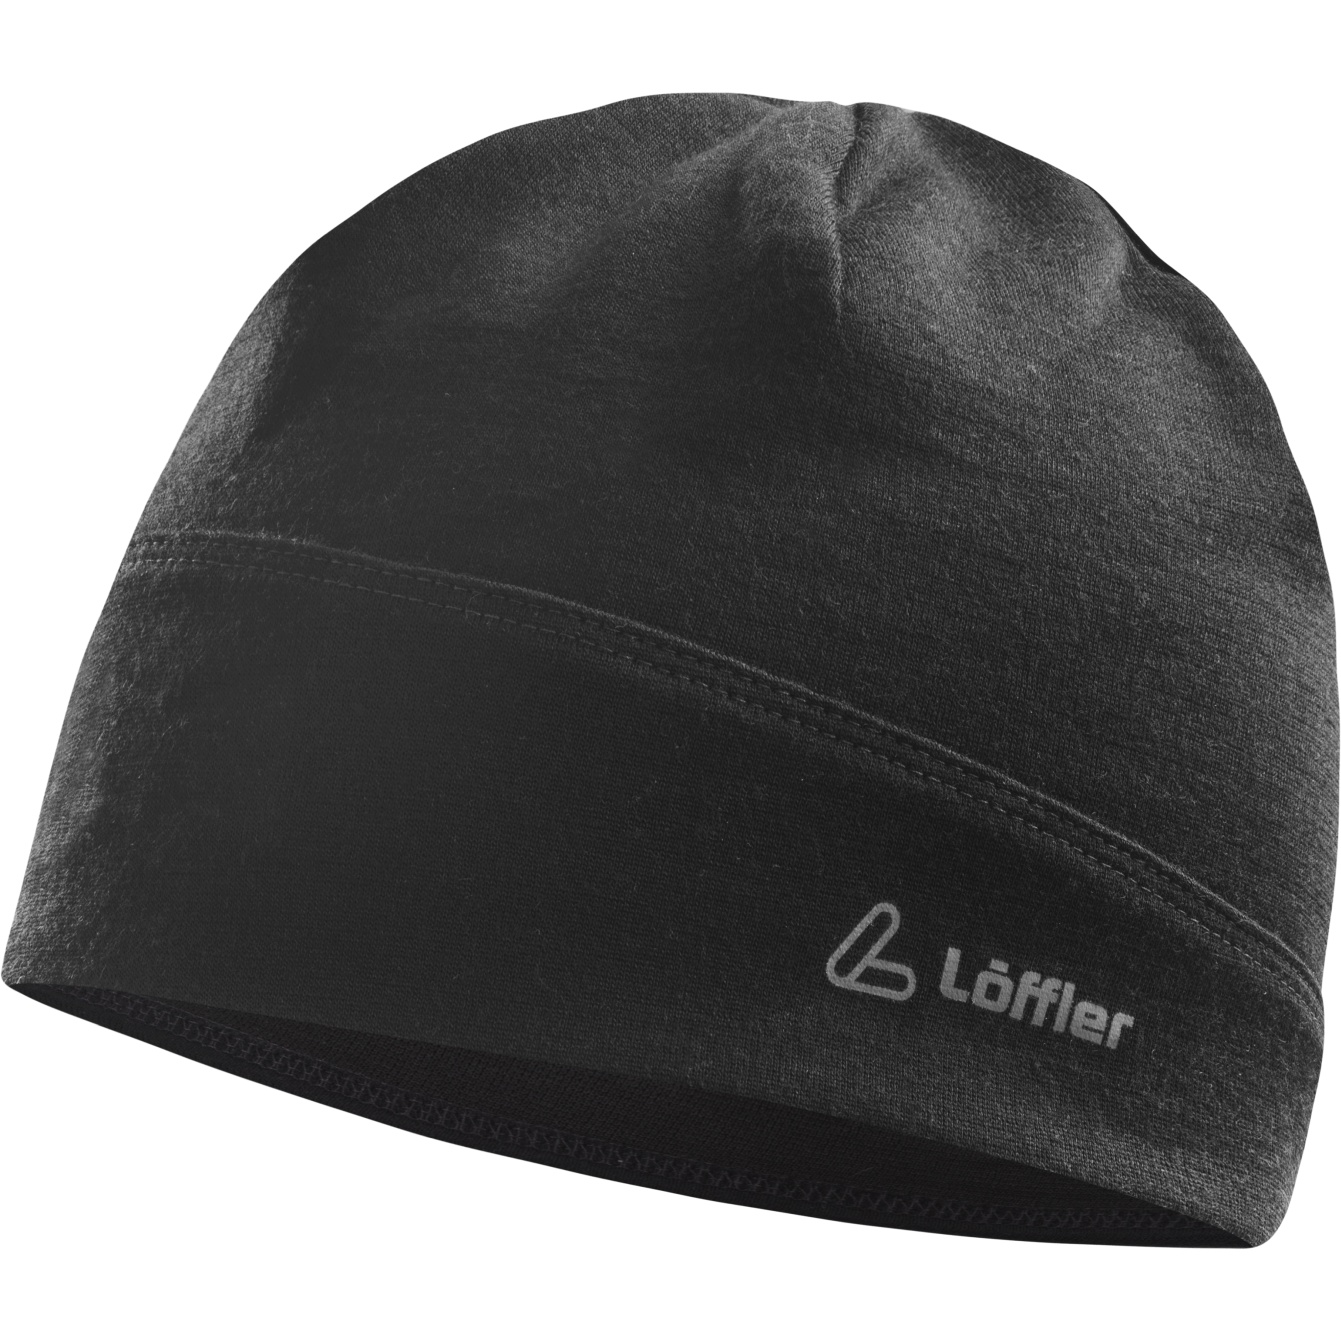 Produktbild von Löffler Merino Wool Mütze - schwarz 990